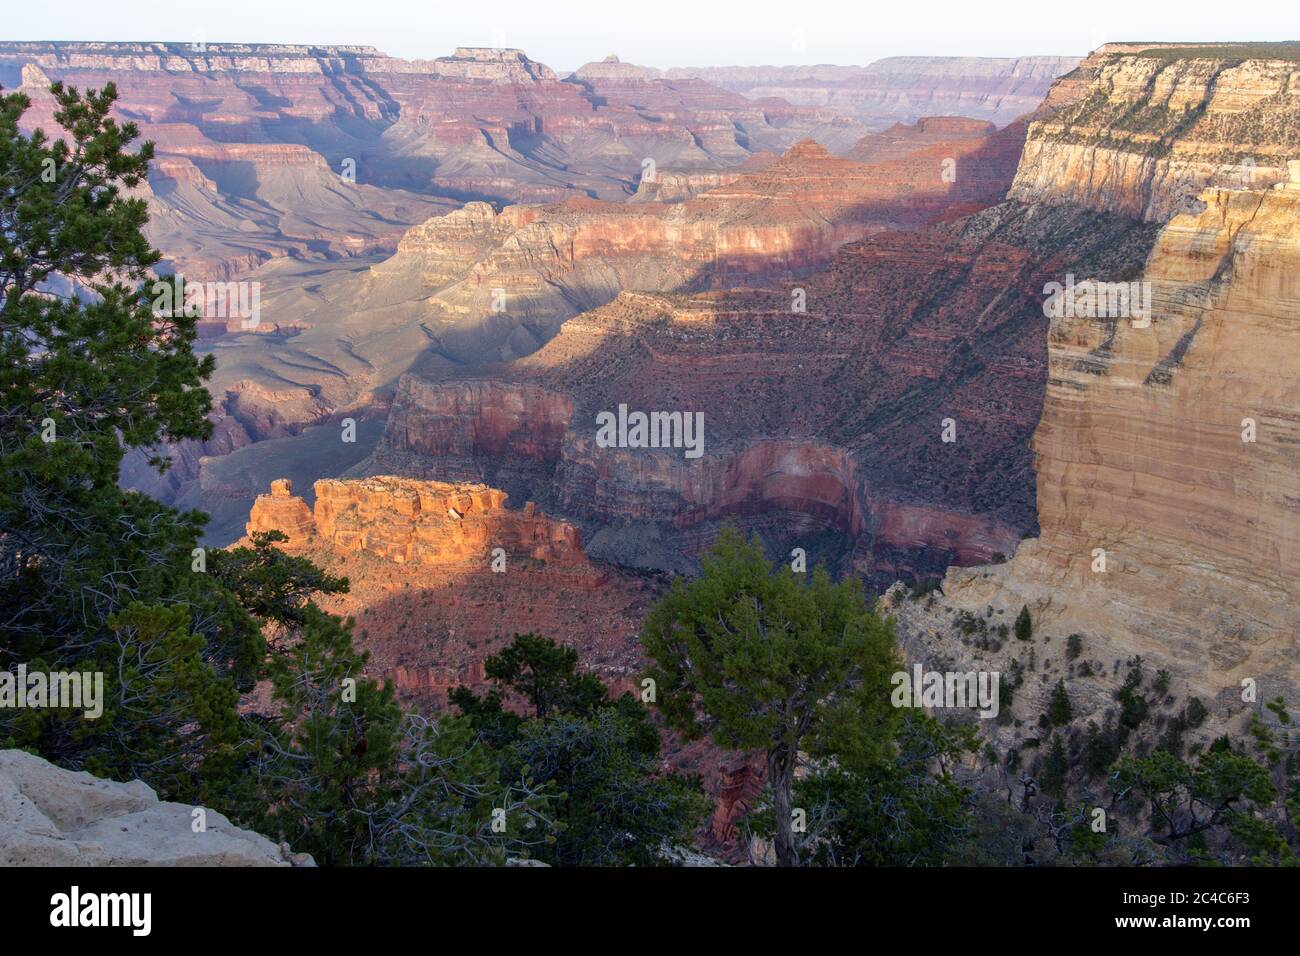 Wundervolle Landschaft des Grand Canyon im Vereinigten Staat von Amerika Stockfoto